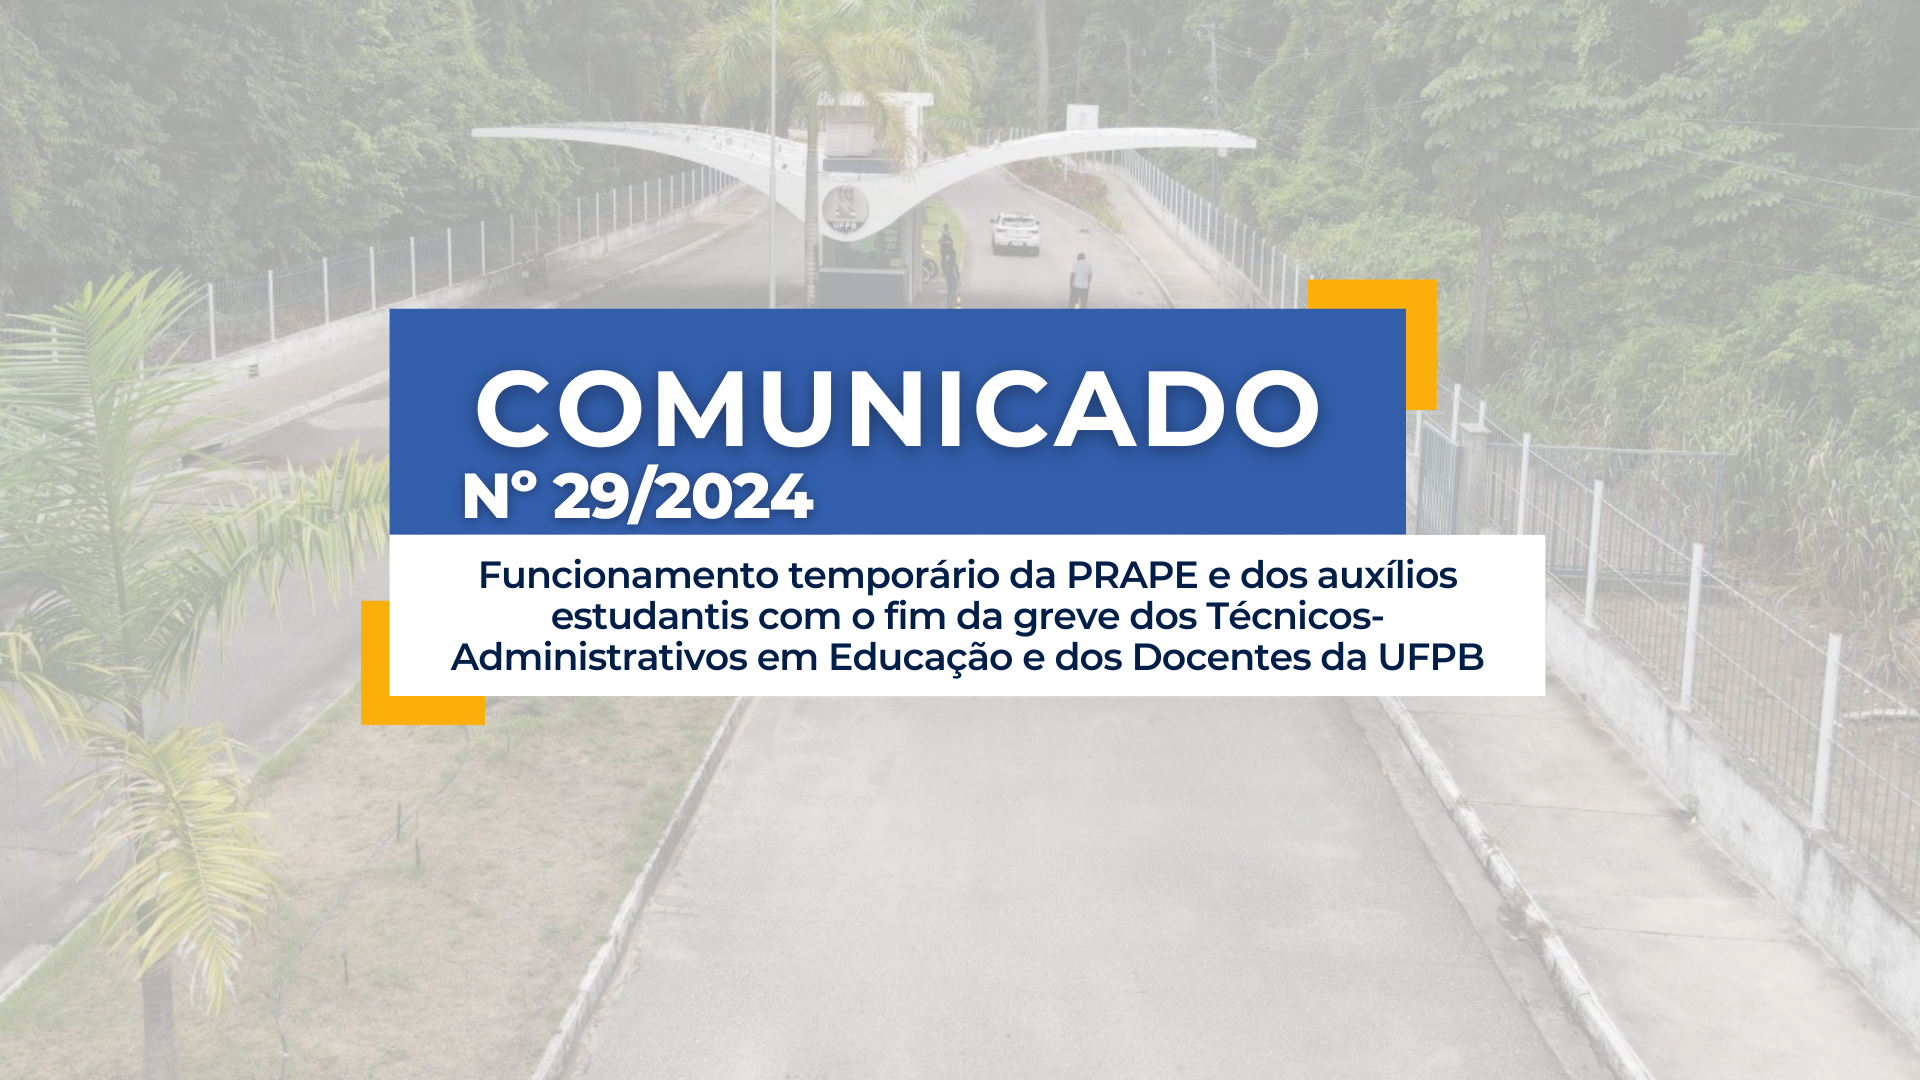 COMUNICADO Nº 29/2024 -  Funcionamento temporário da PRAPE e dos auxílios estudantis com o fim da greve dos Técnicos-Administrativos em Educação e dos Docentes da UFPB